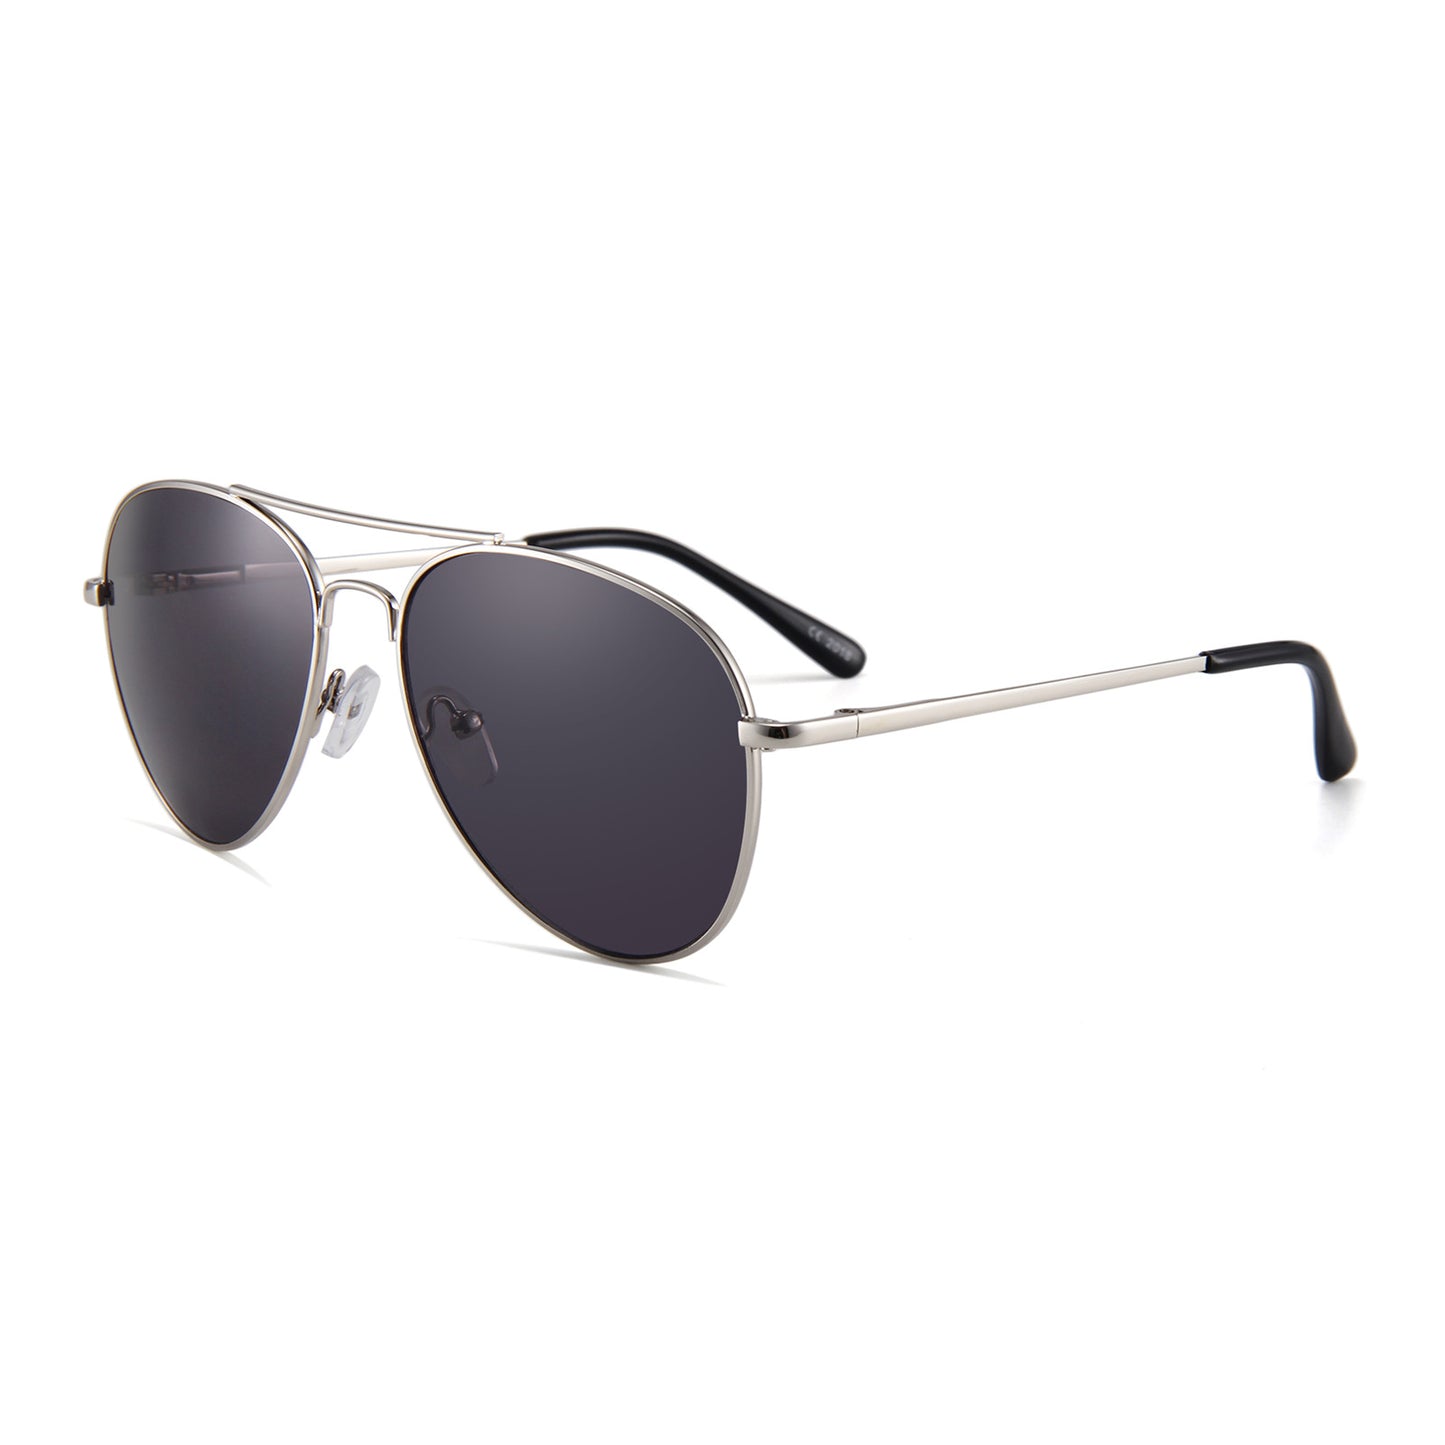 Retro Flying Metal Sunglasses for Men